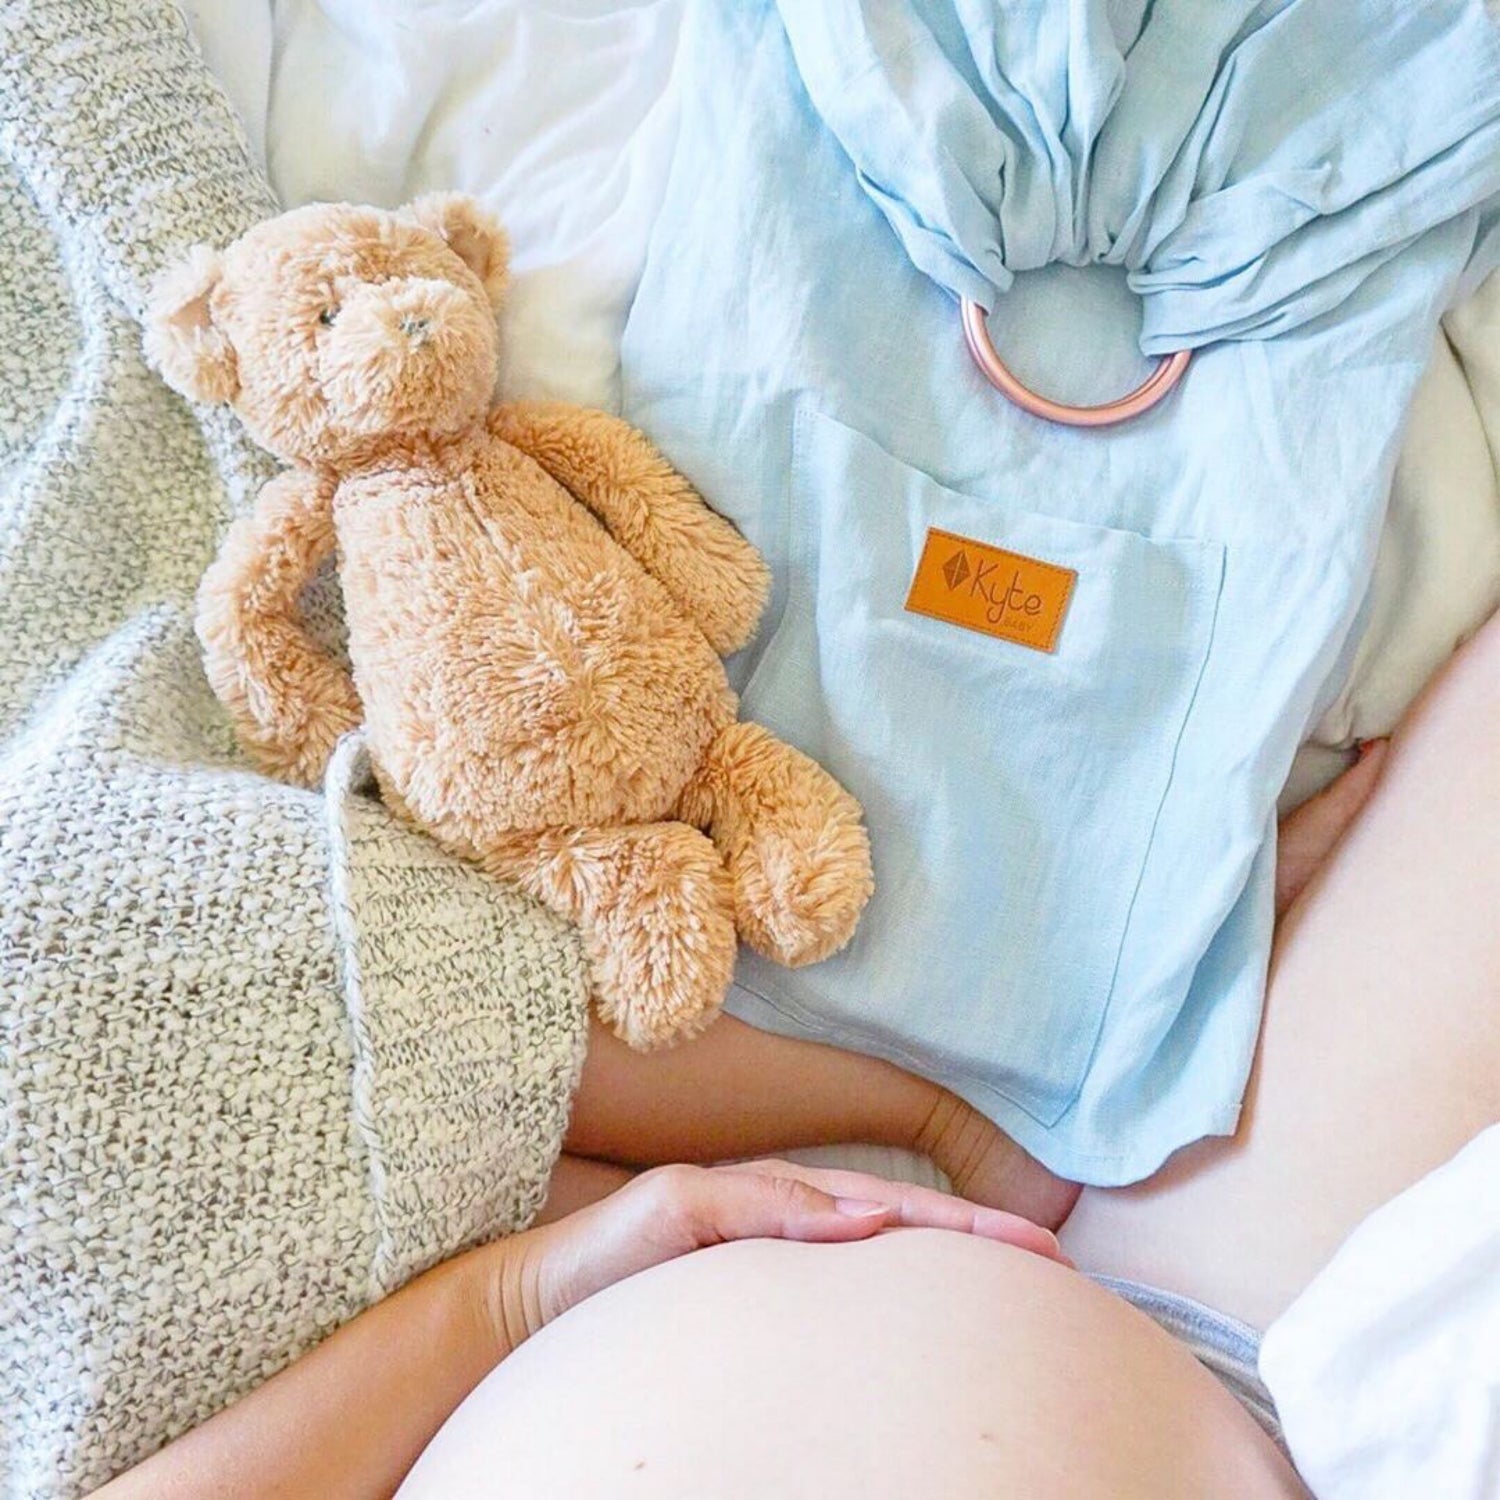 Baby Essentials Checklist, Newborn Checklist, Nursery Checklist, Baby  Registry Checklist, Pregnancy Checklist, Instant Download 